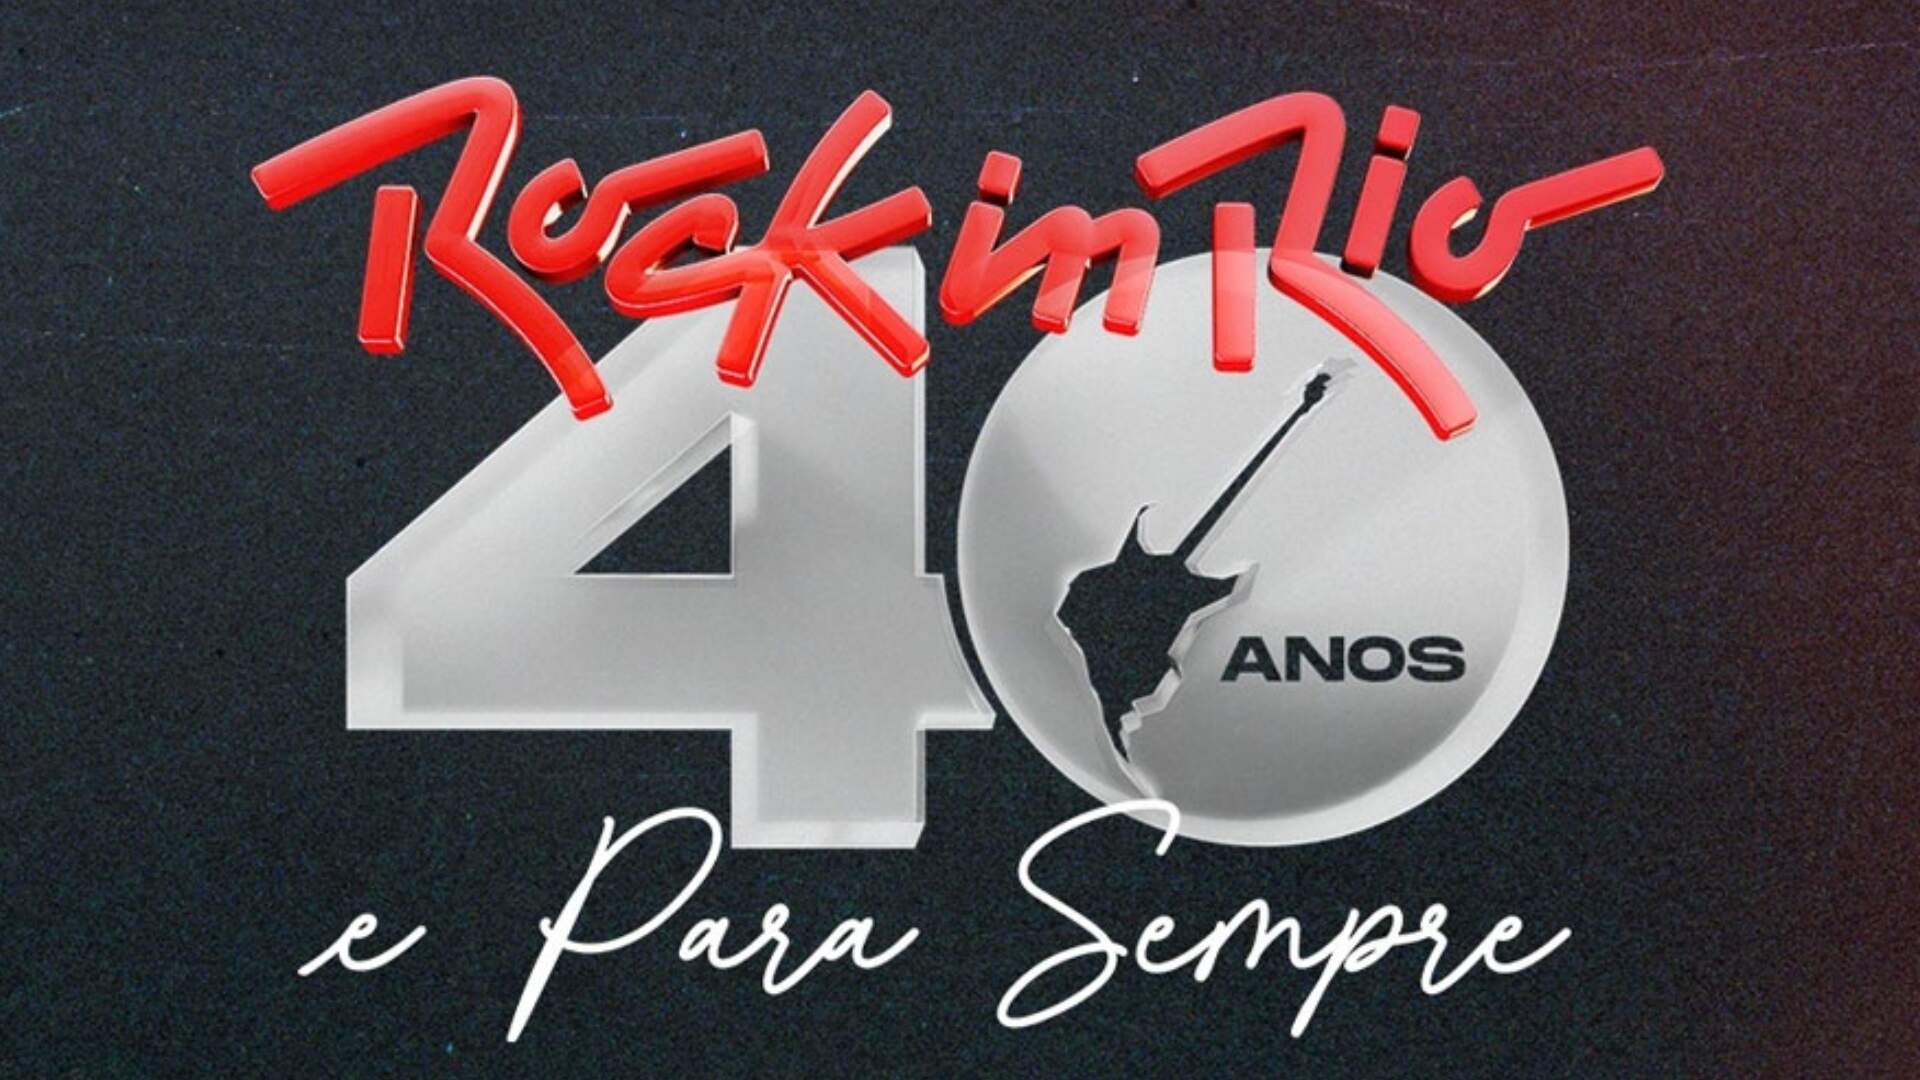 Deixa o Coração Falar: Música em homenagem aos 40 anos do Rock in Rio é lançada nas plataformas digitais